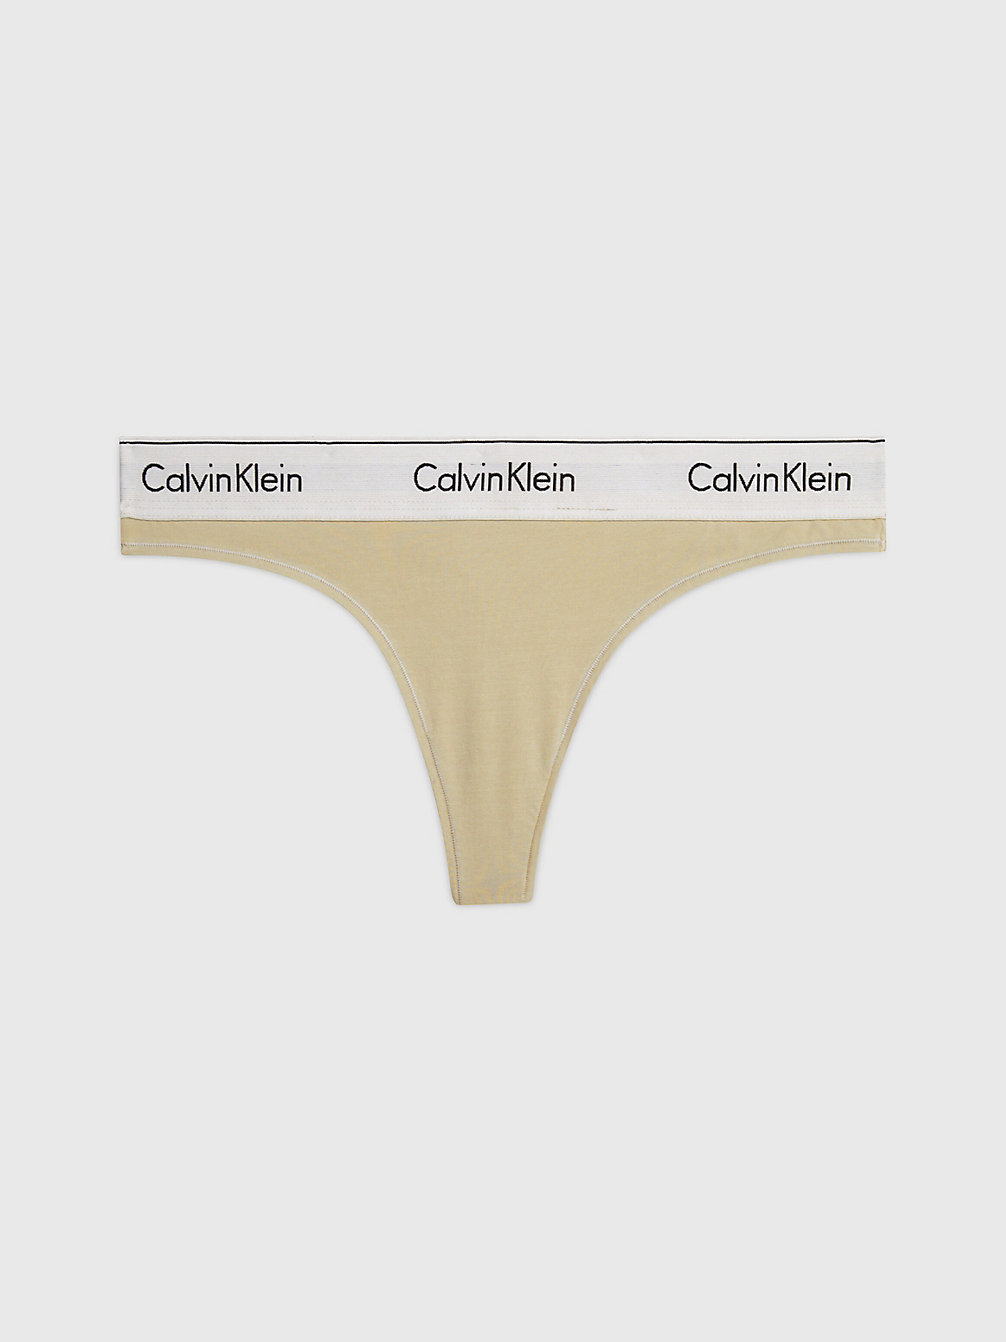 SHELL > String - Modern Cotton > undefined Damen - Calvin Klein